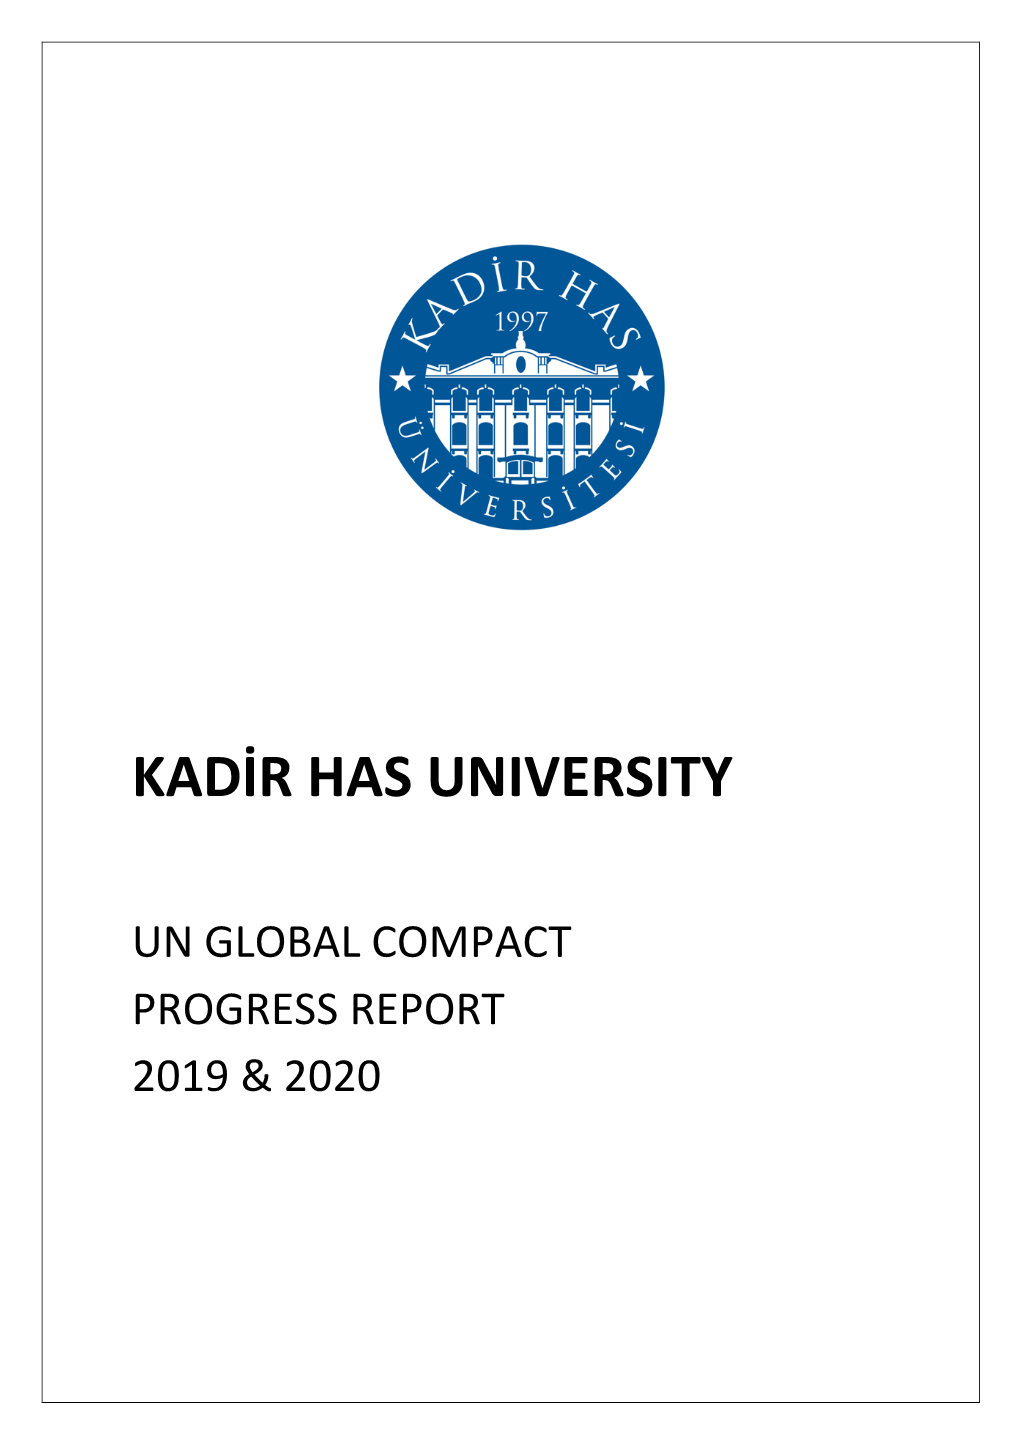 Un Global Compact Progress Report 2019 & 2020